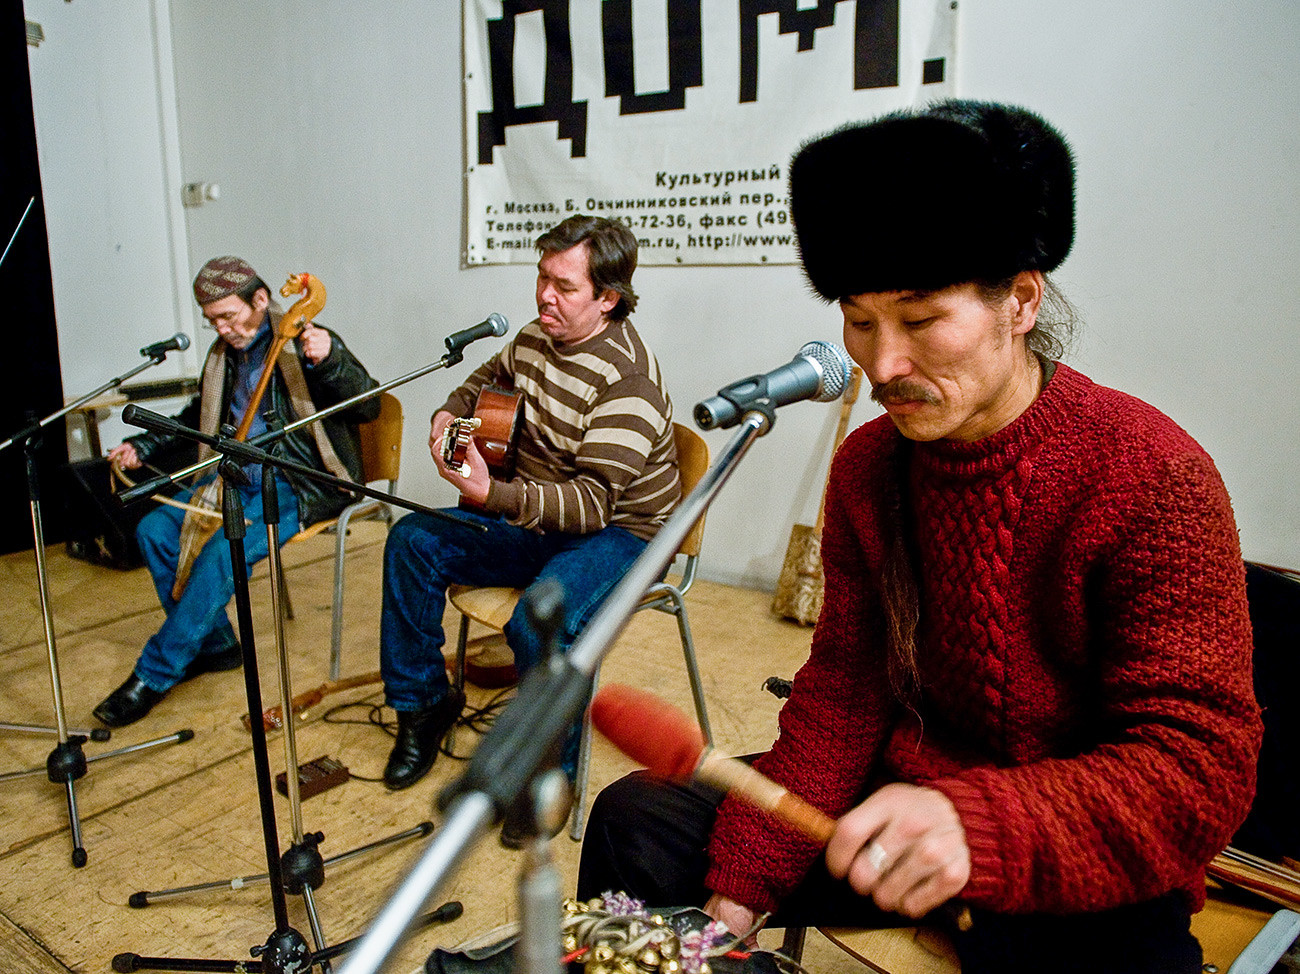 Участники тувинской группы «Хуун-Хуур-Ту» Кайгал-ол Ховалыг, Саян Бапак и Алексей Сарыглар (слева направо) во время репетиции перед концертом в клубе «Дом» 